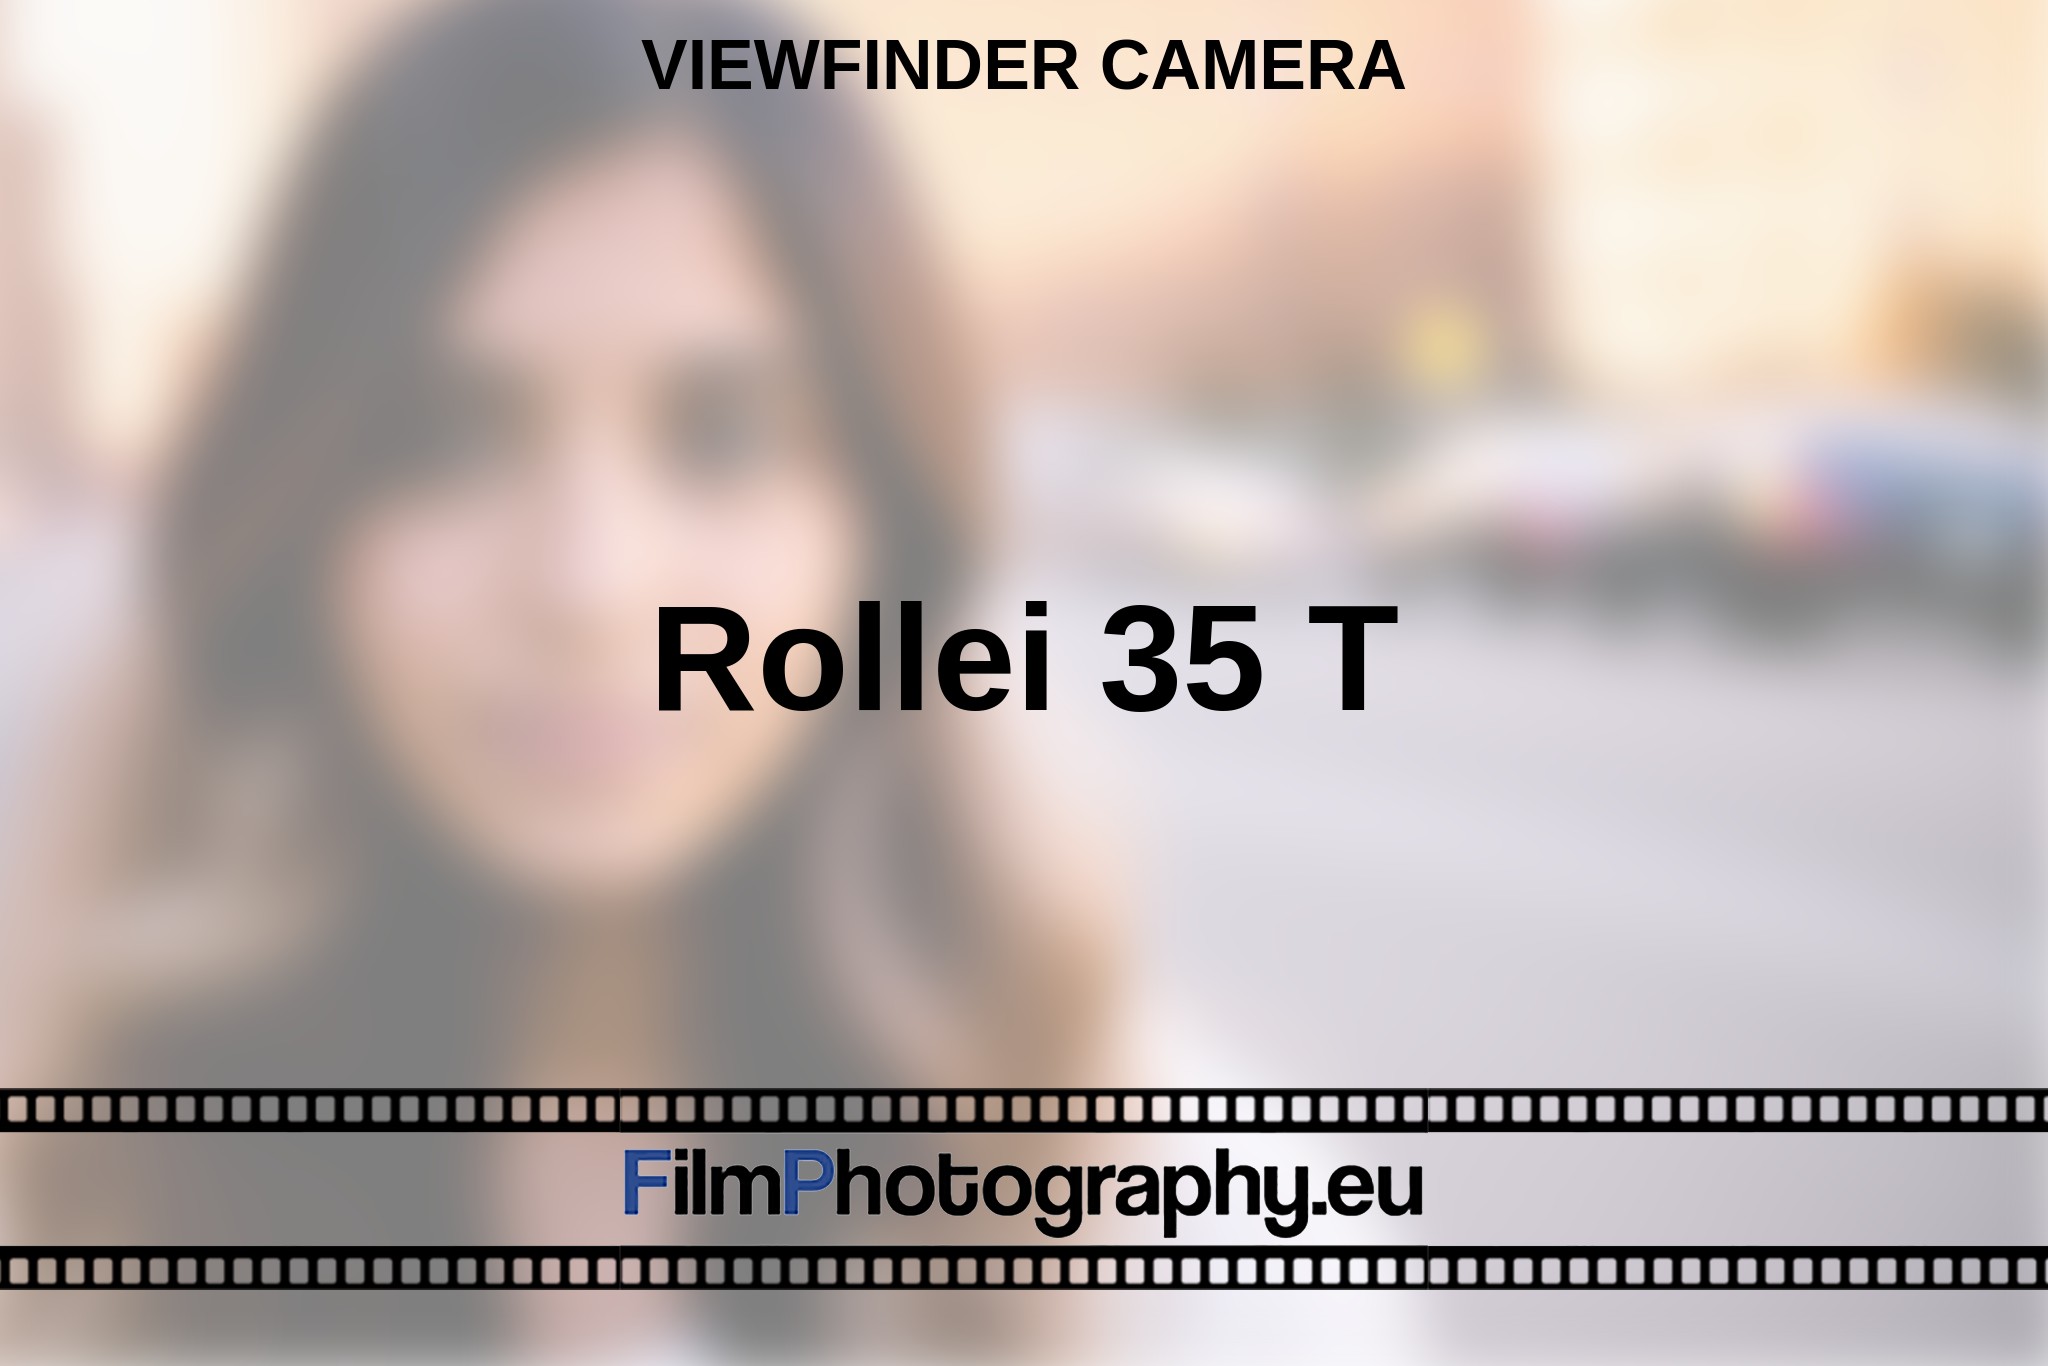 rollei-35-t-viewfinder-camera-en-bnv.jpg